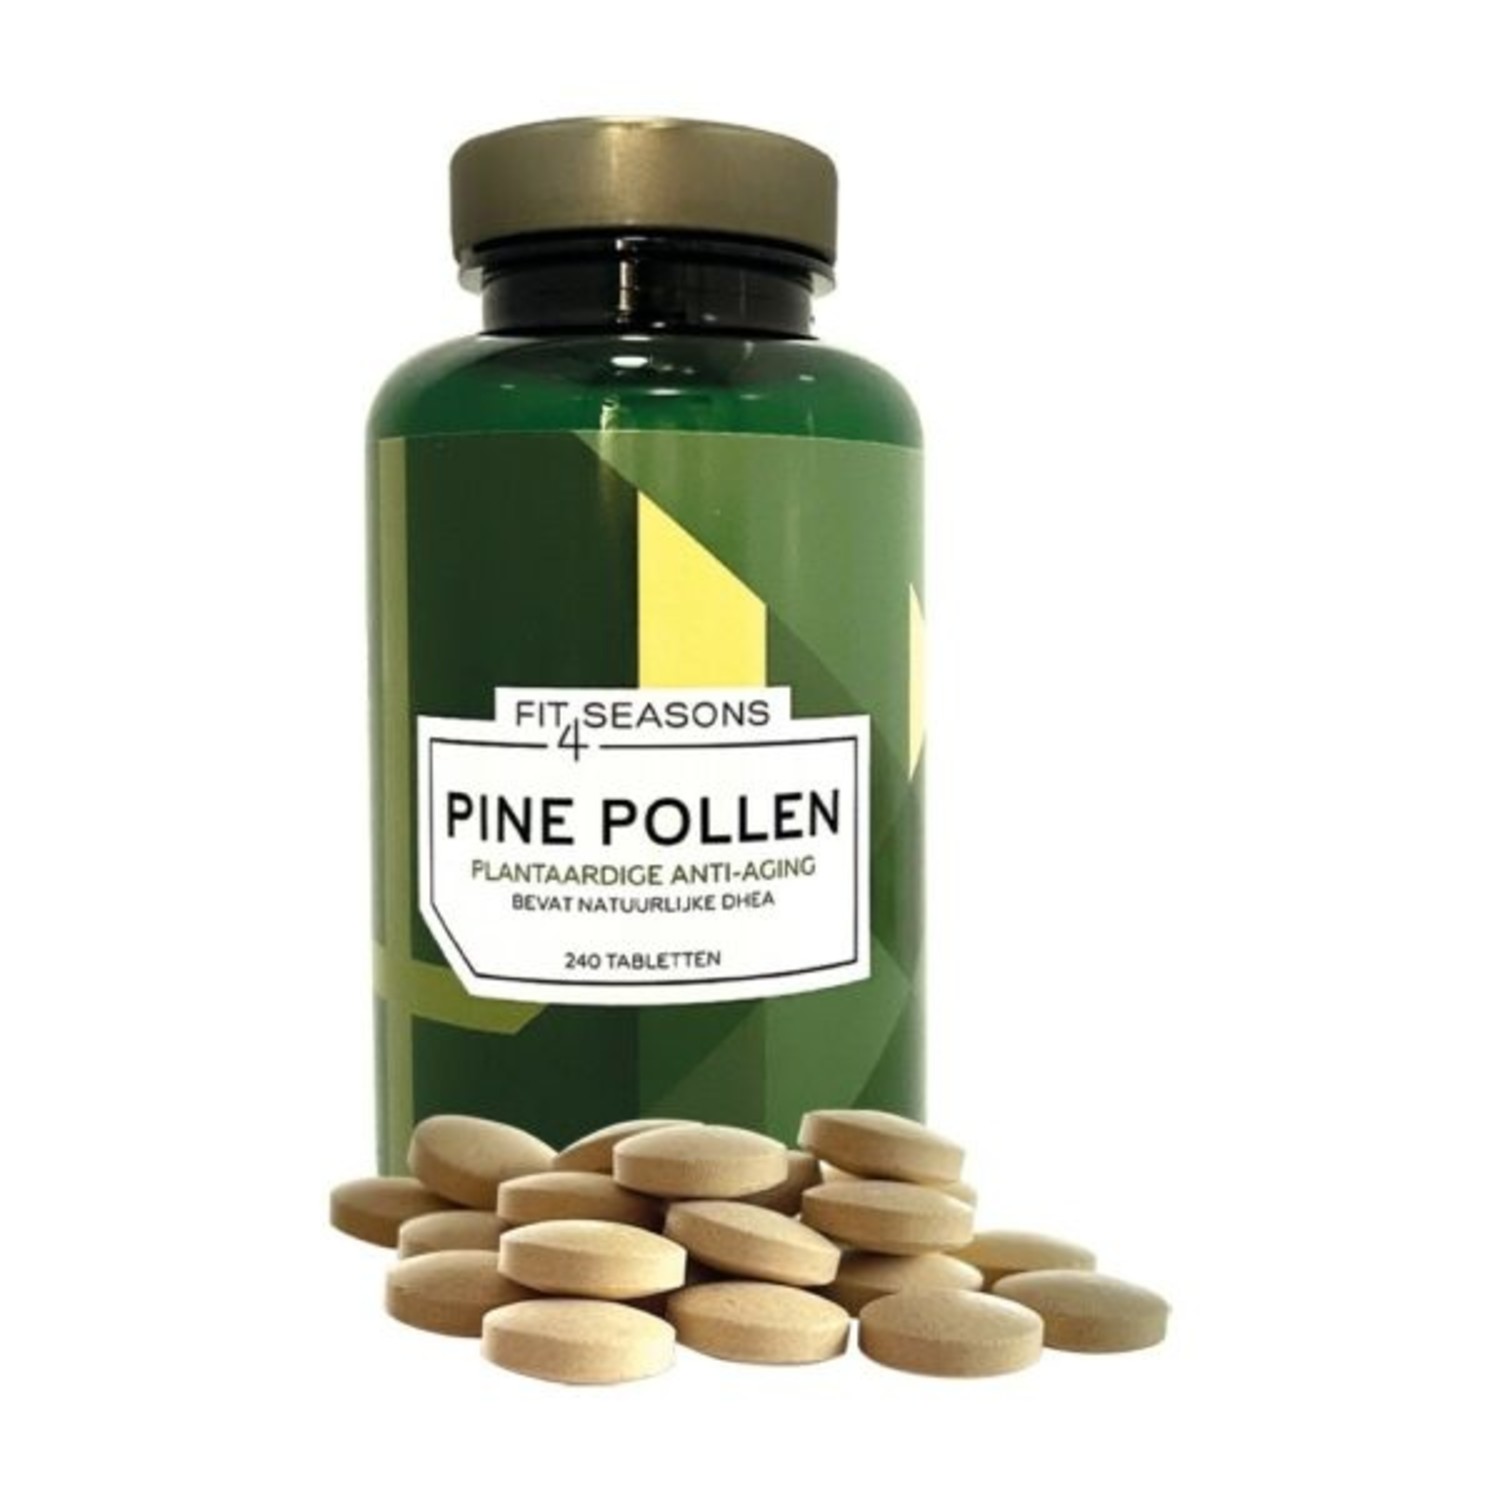 PINE POLLEN (Pollen de pin) - Produit de qualité supérieure de l'original, Certifié ISO-9001, Issu d'une récolte naturelle, Cru